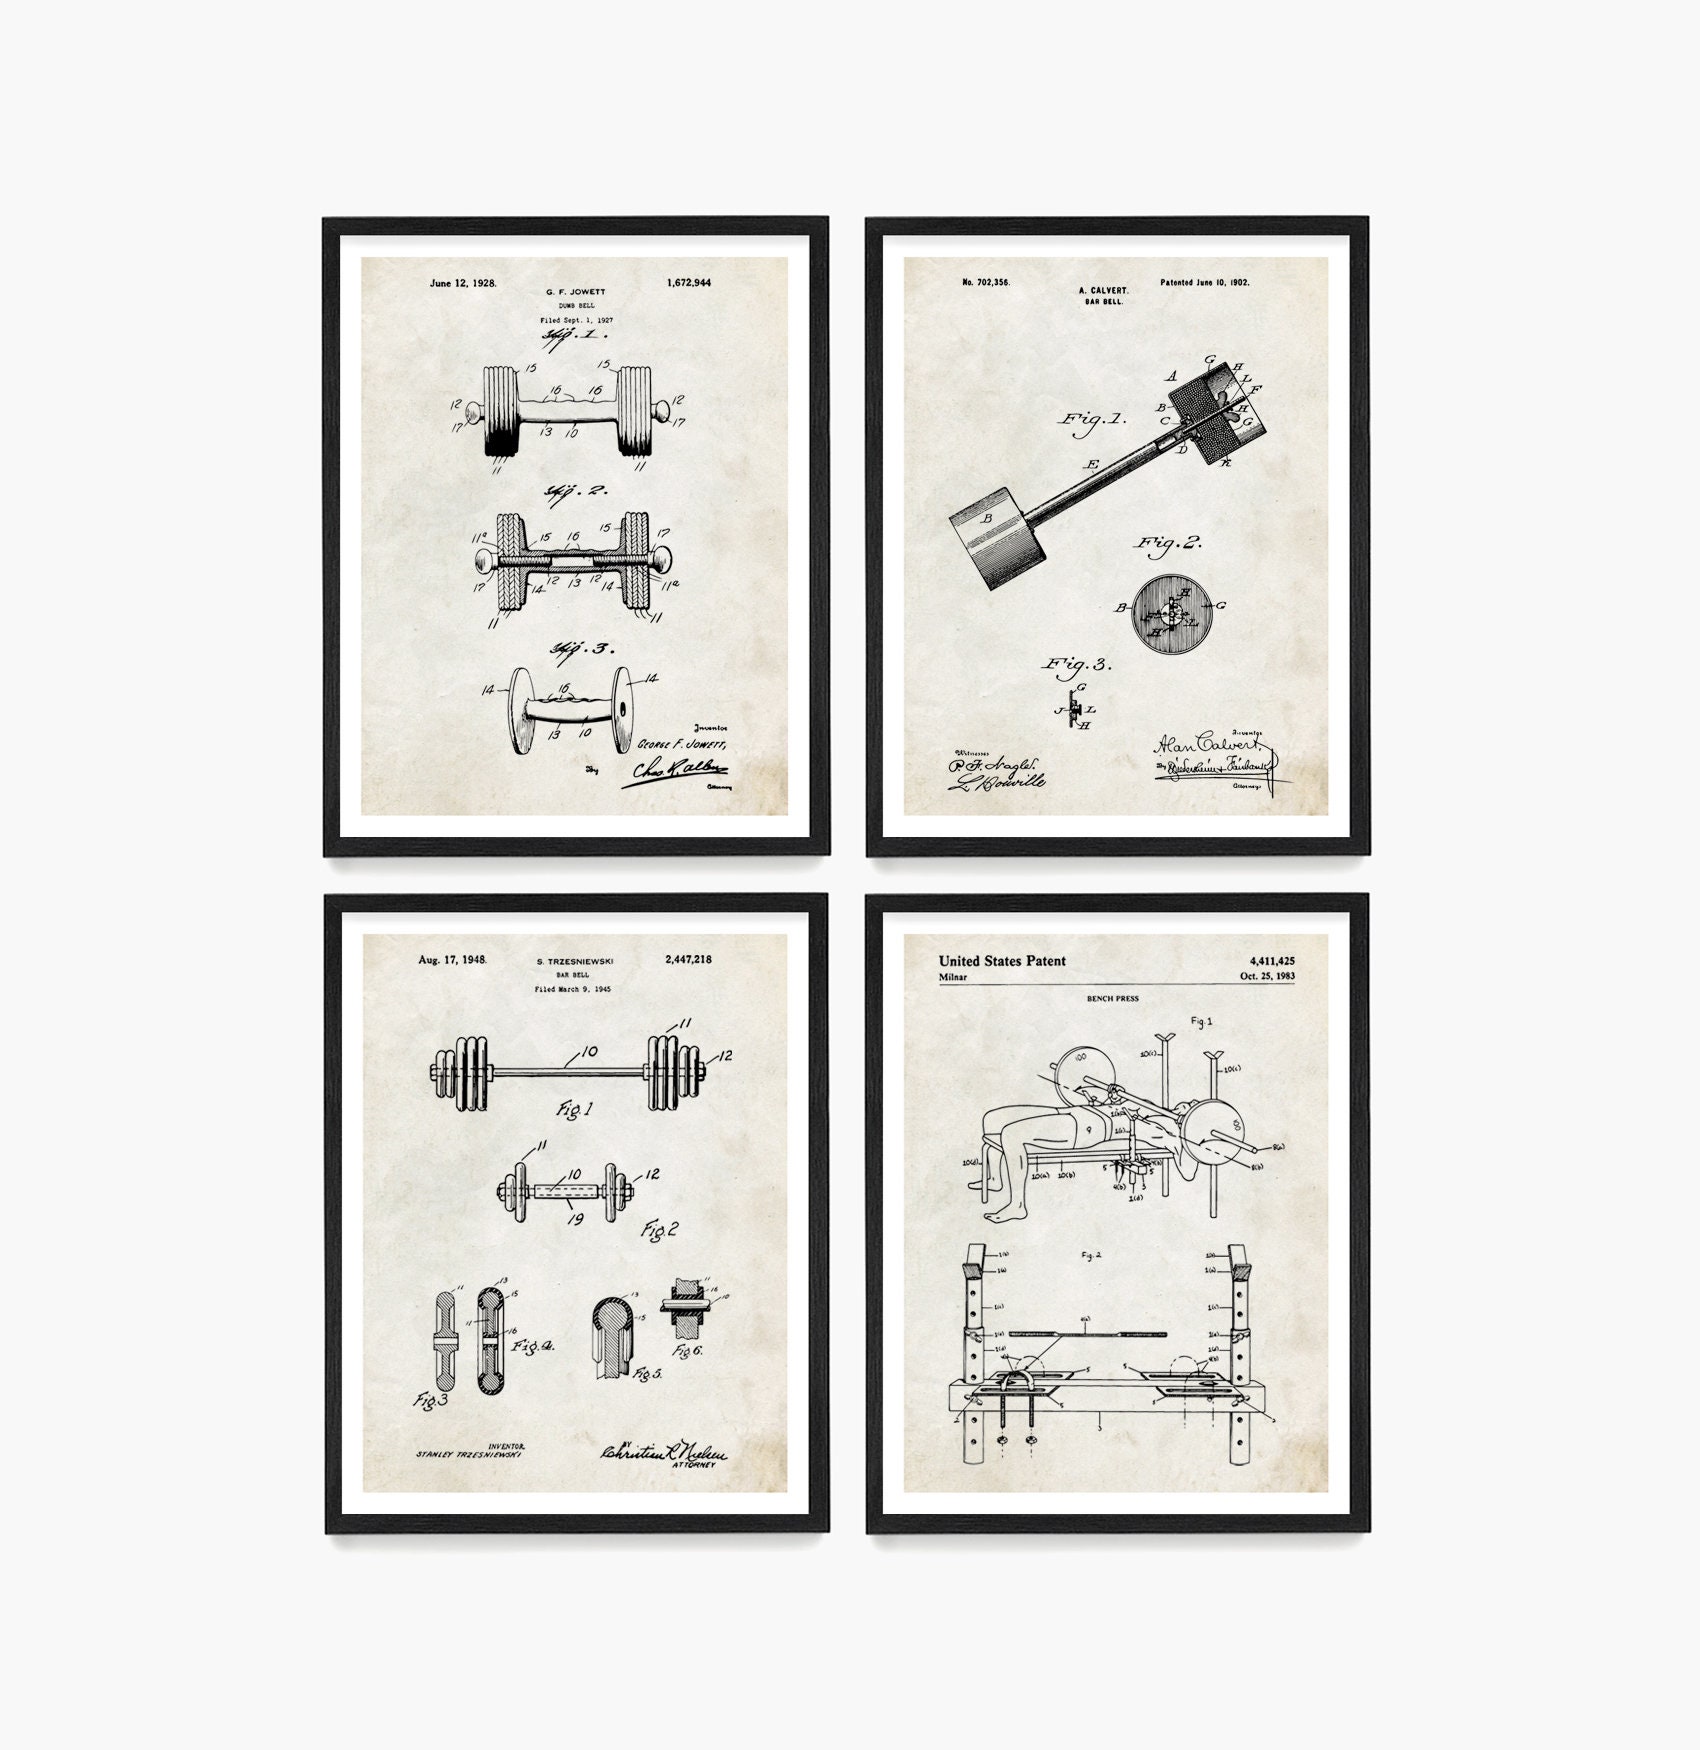 Revolver Patent Art Blueprint - Newegg.com